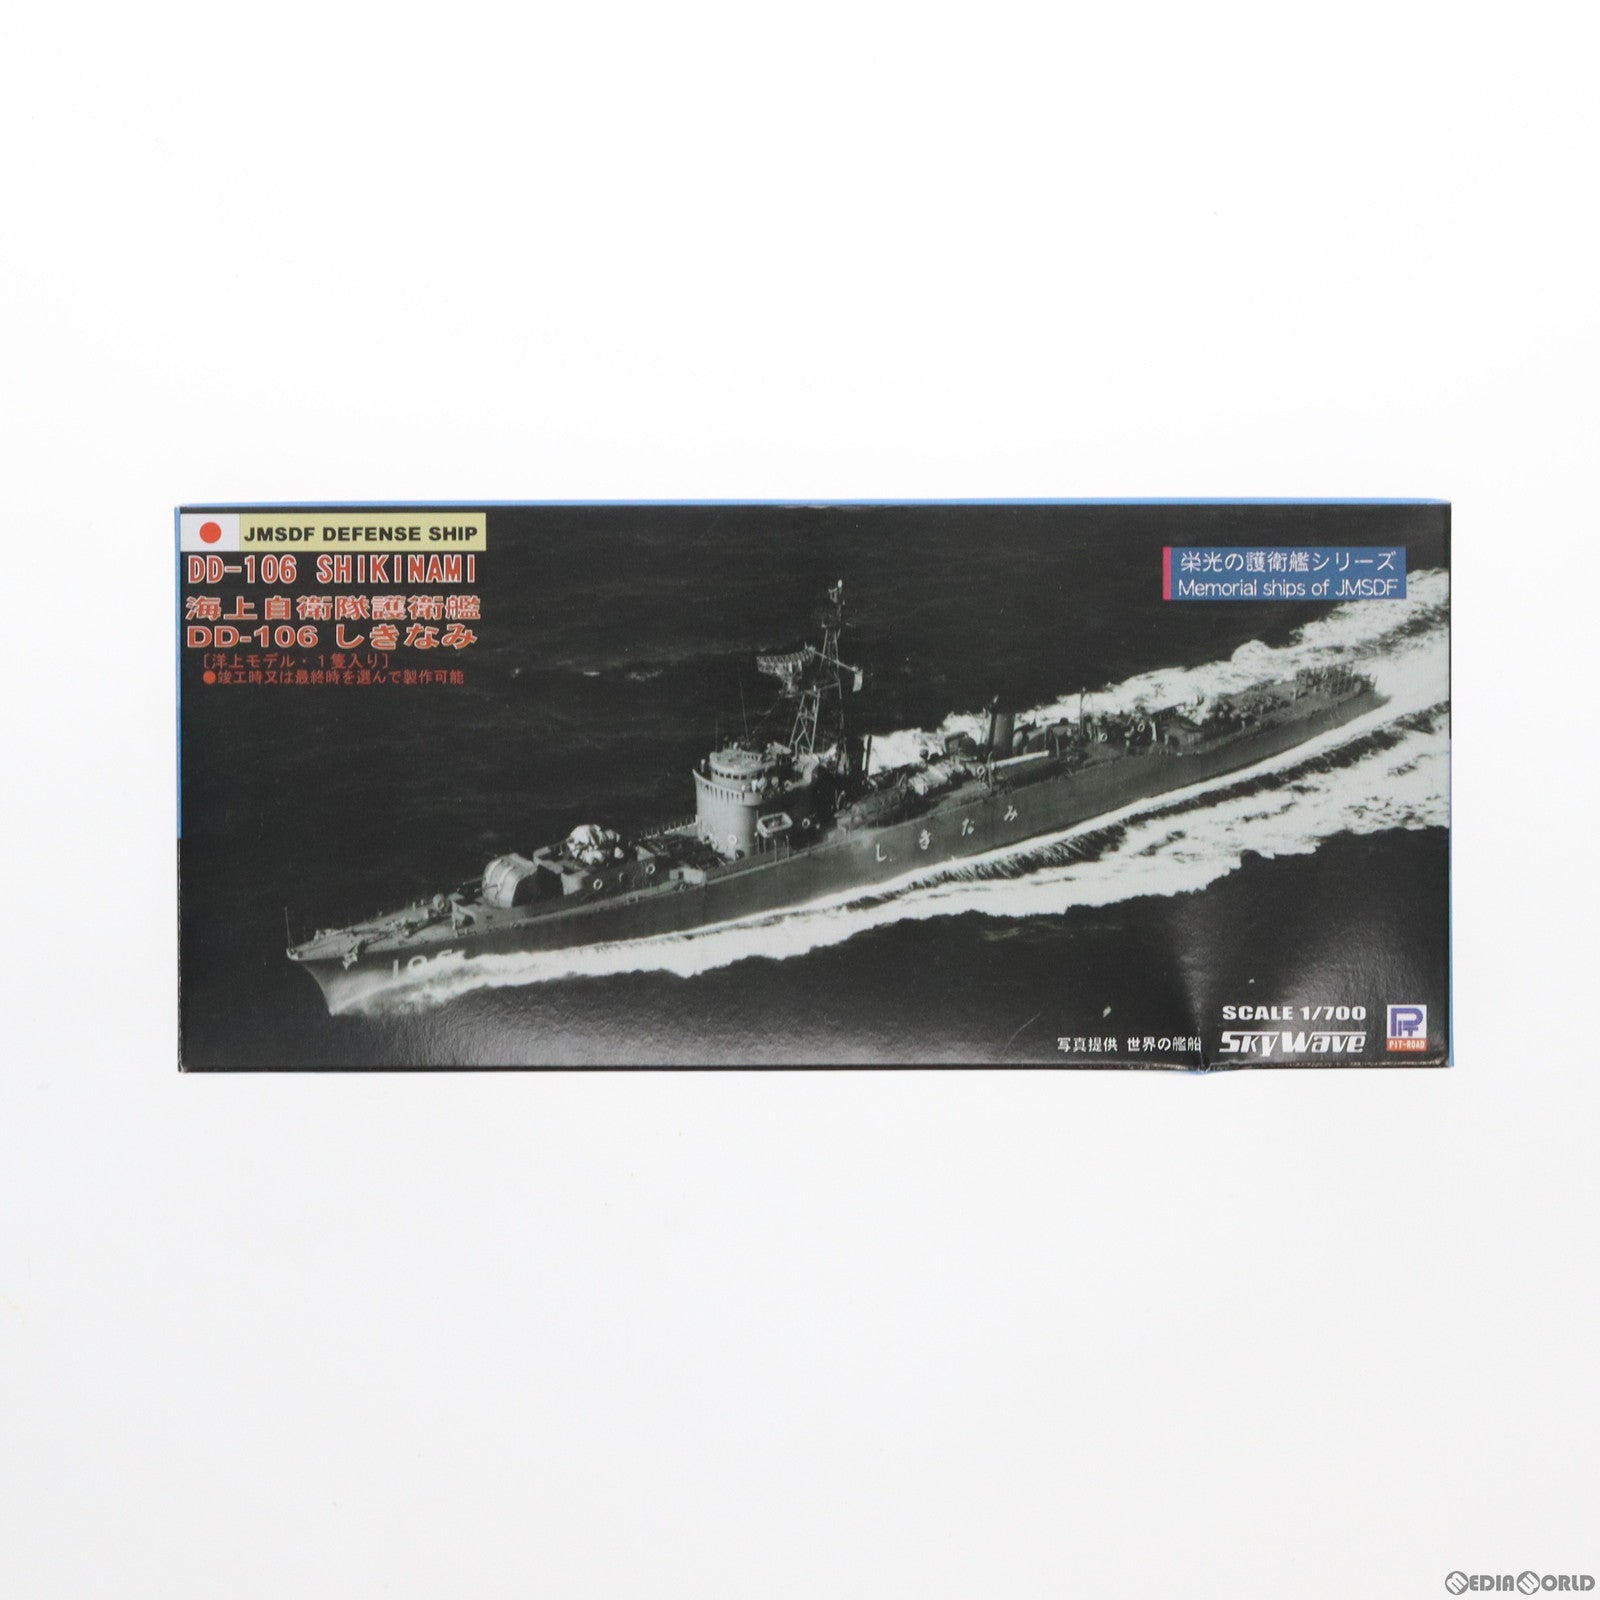 【中古即納】[PTM]スカイウェーブシリーズ 1/700 海上自衛隊護衛艦 DD-106 しきなみ プラモデル(J51)  ピットロード(20120131)